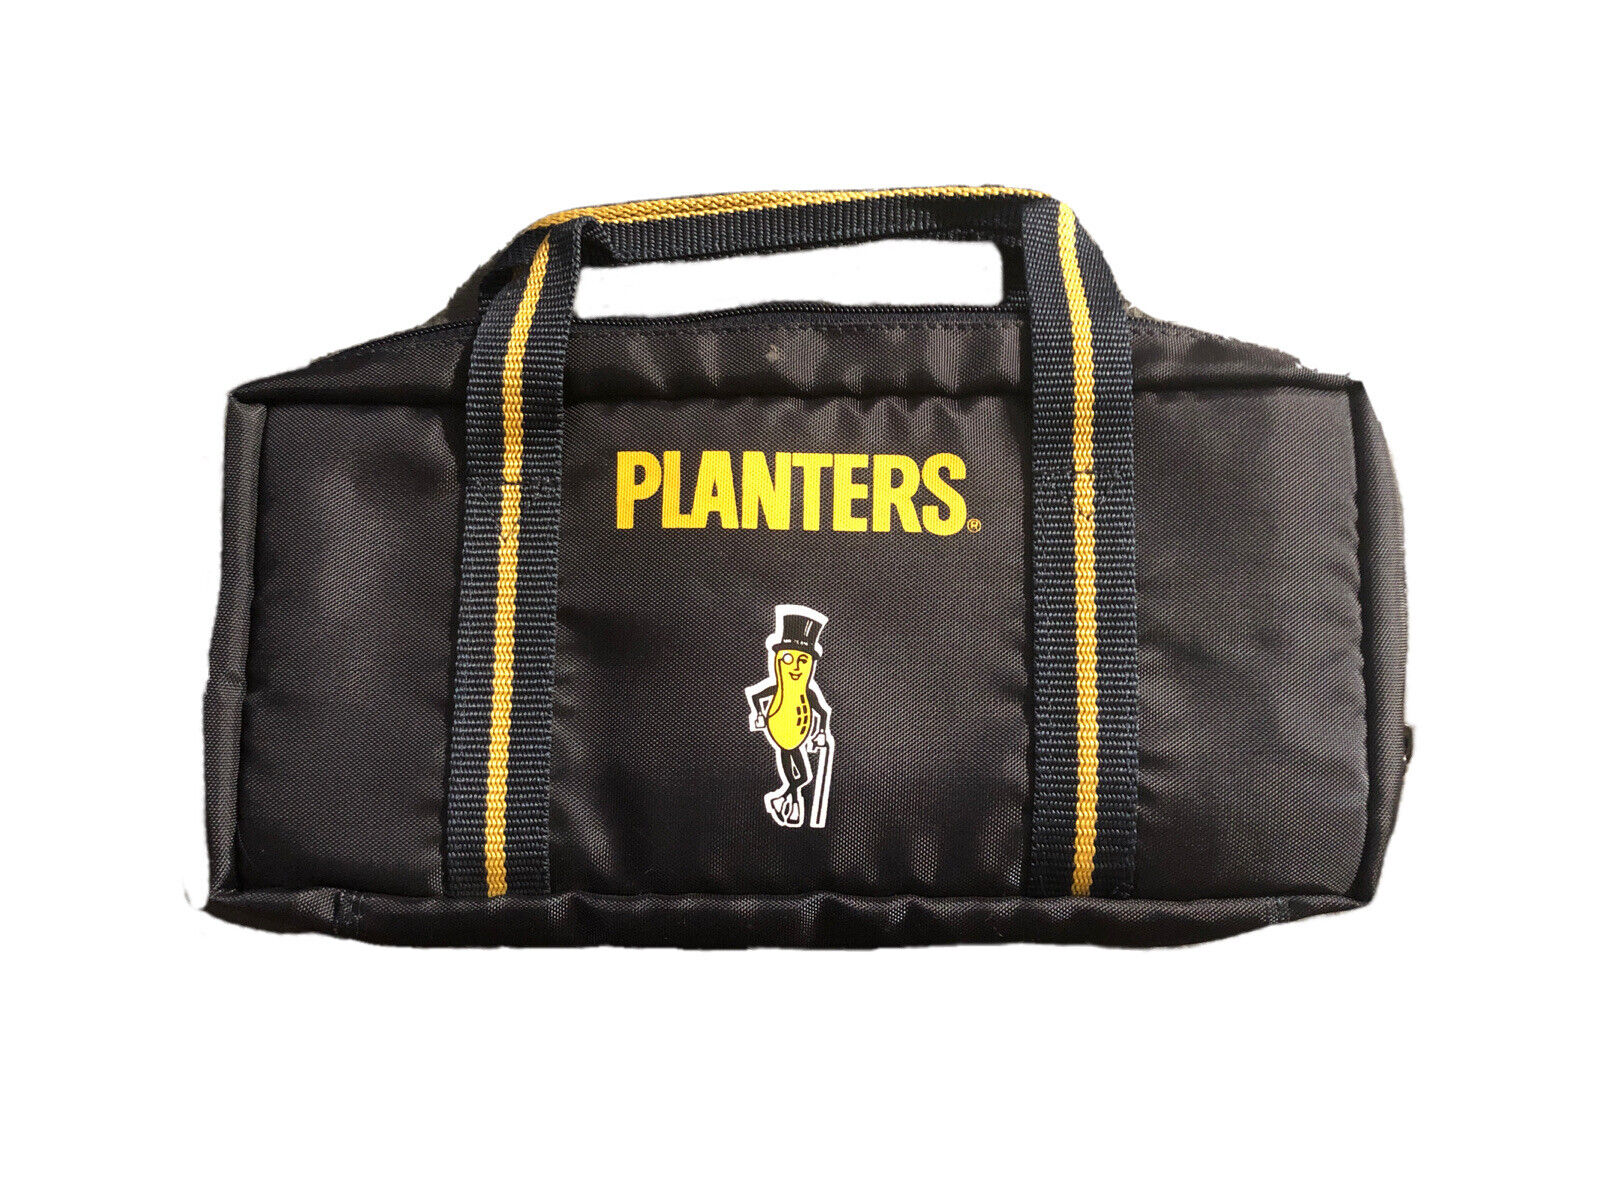 Planters Peanuts Vintage 12 Casette Holder Bag Carrying Case